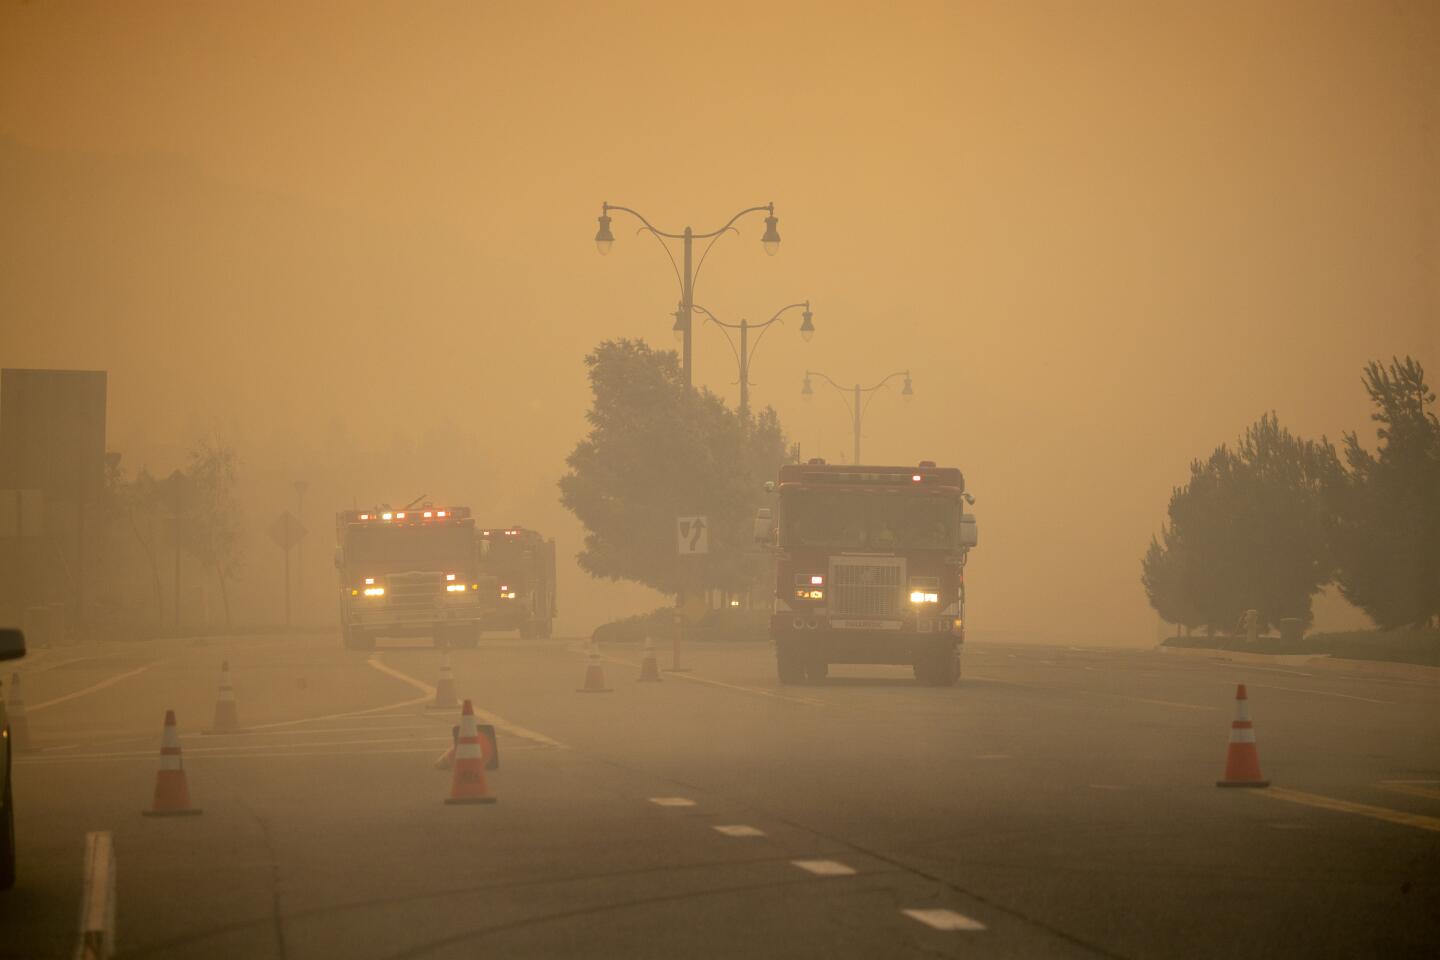 Firetrucks drive in a smoky haze